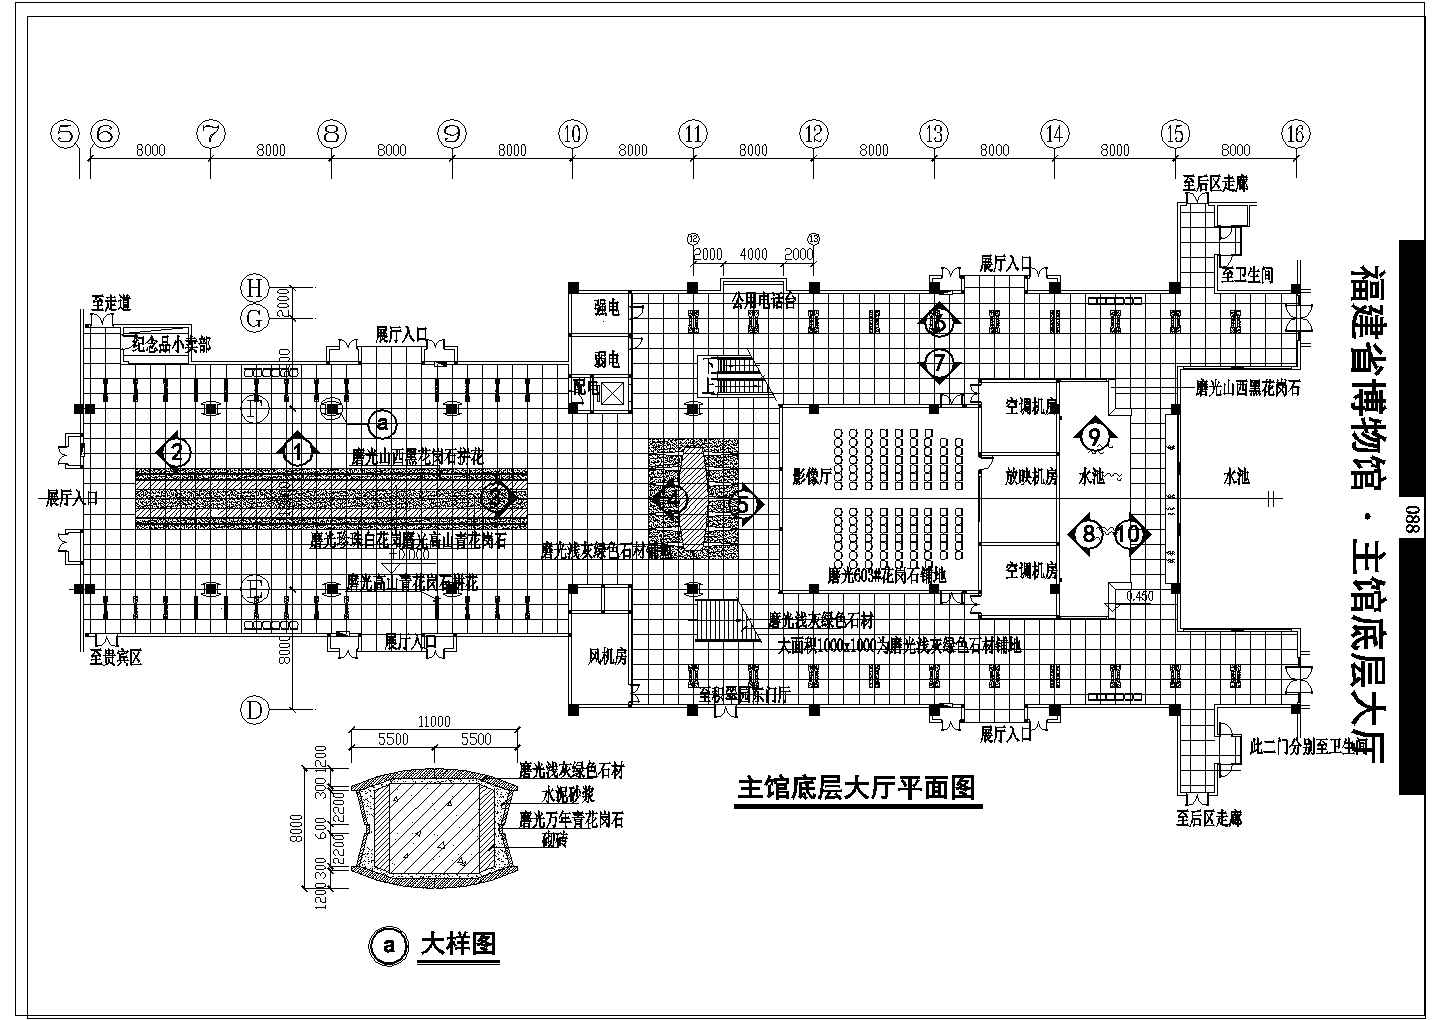 福建省博物馆主馆底层大厅装修CAD设计方案